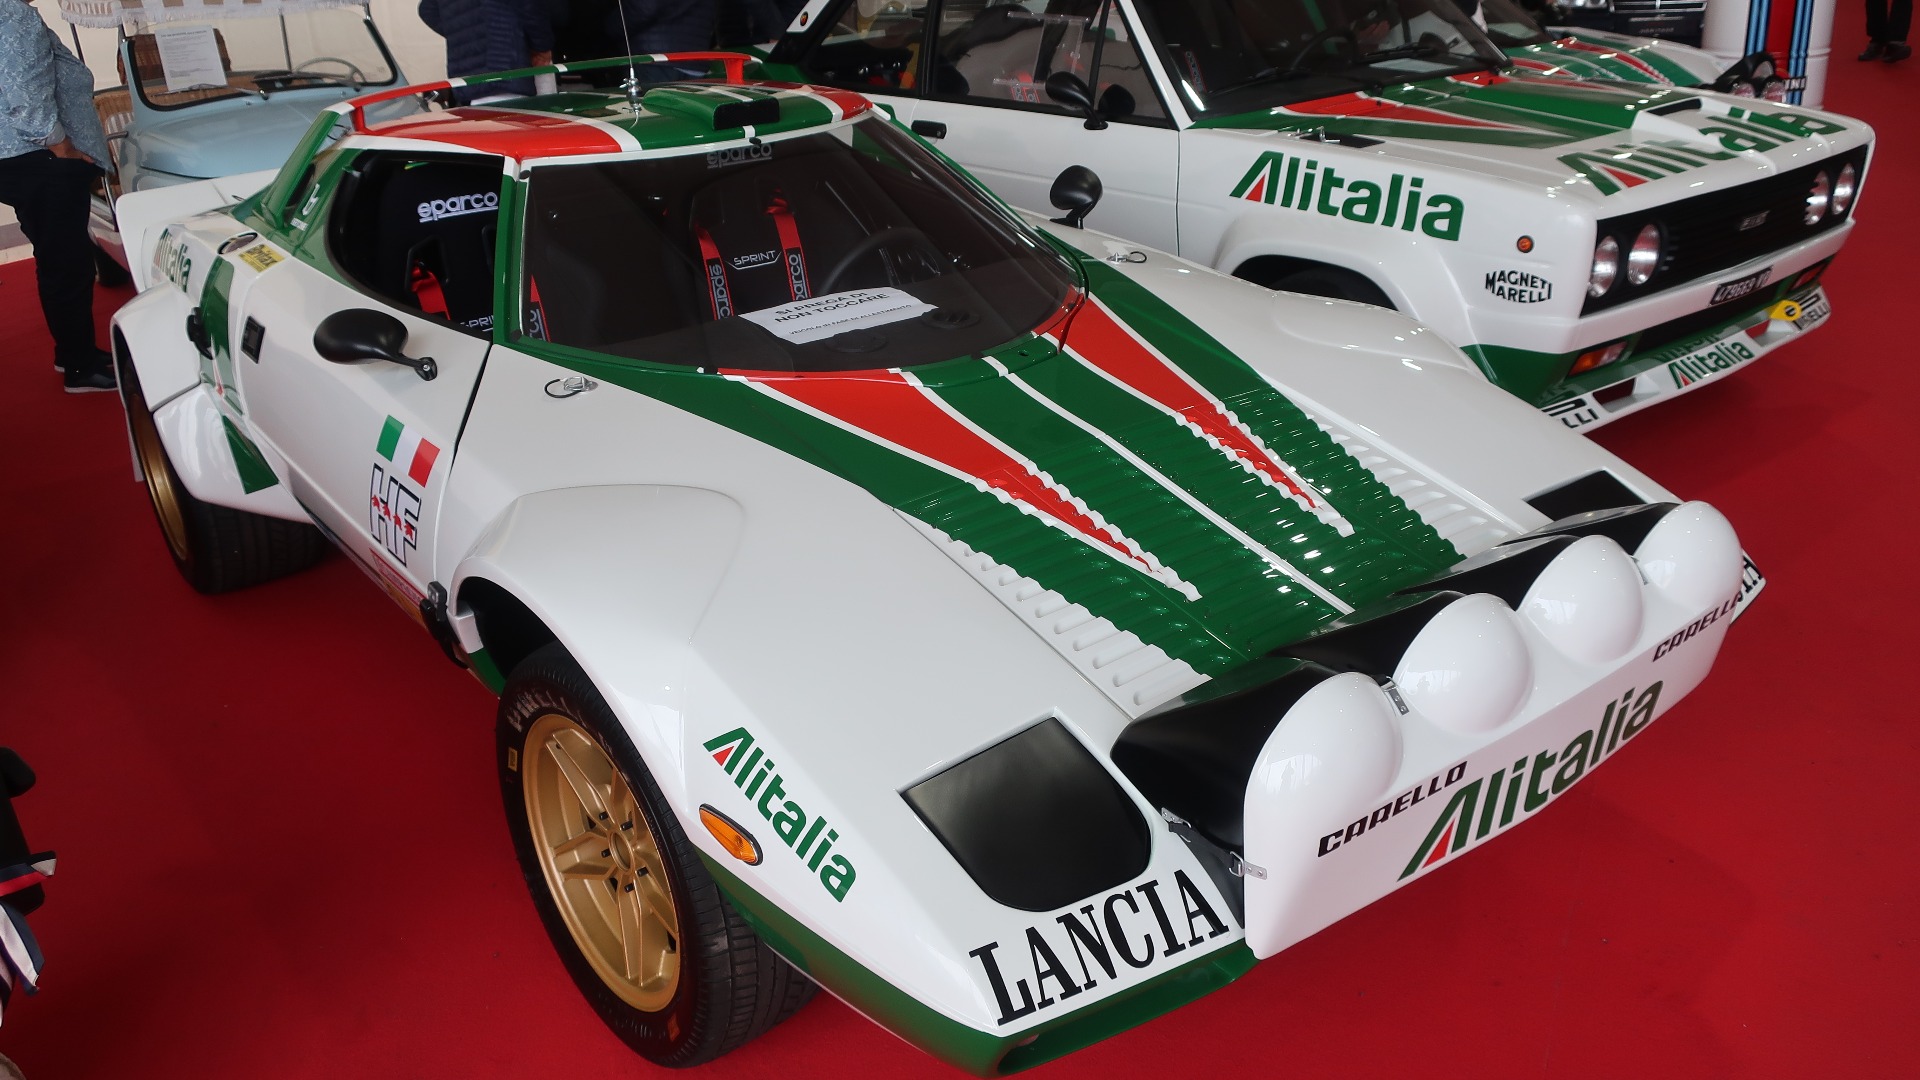 Alitalia-farger kan ikke bli feil, særlig ikke når man ser rallyikoner som dette på italiensk jord.